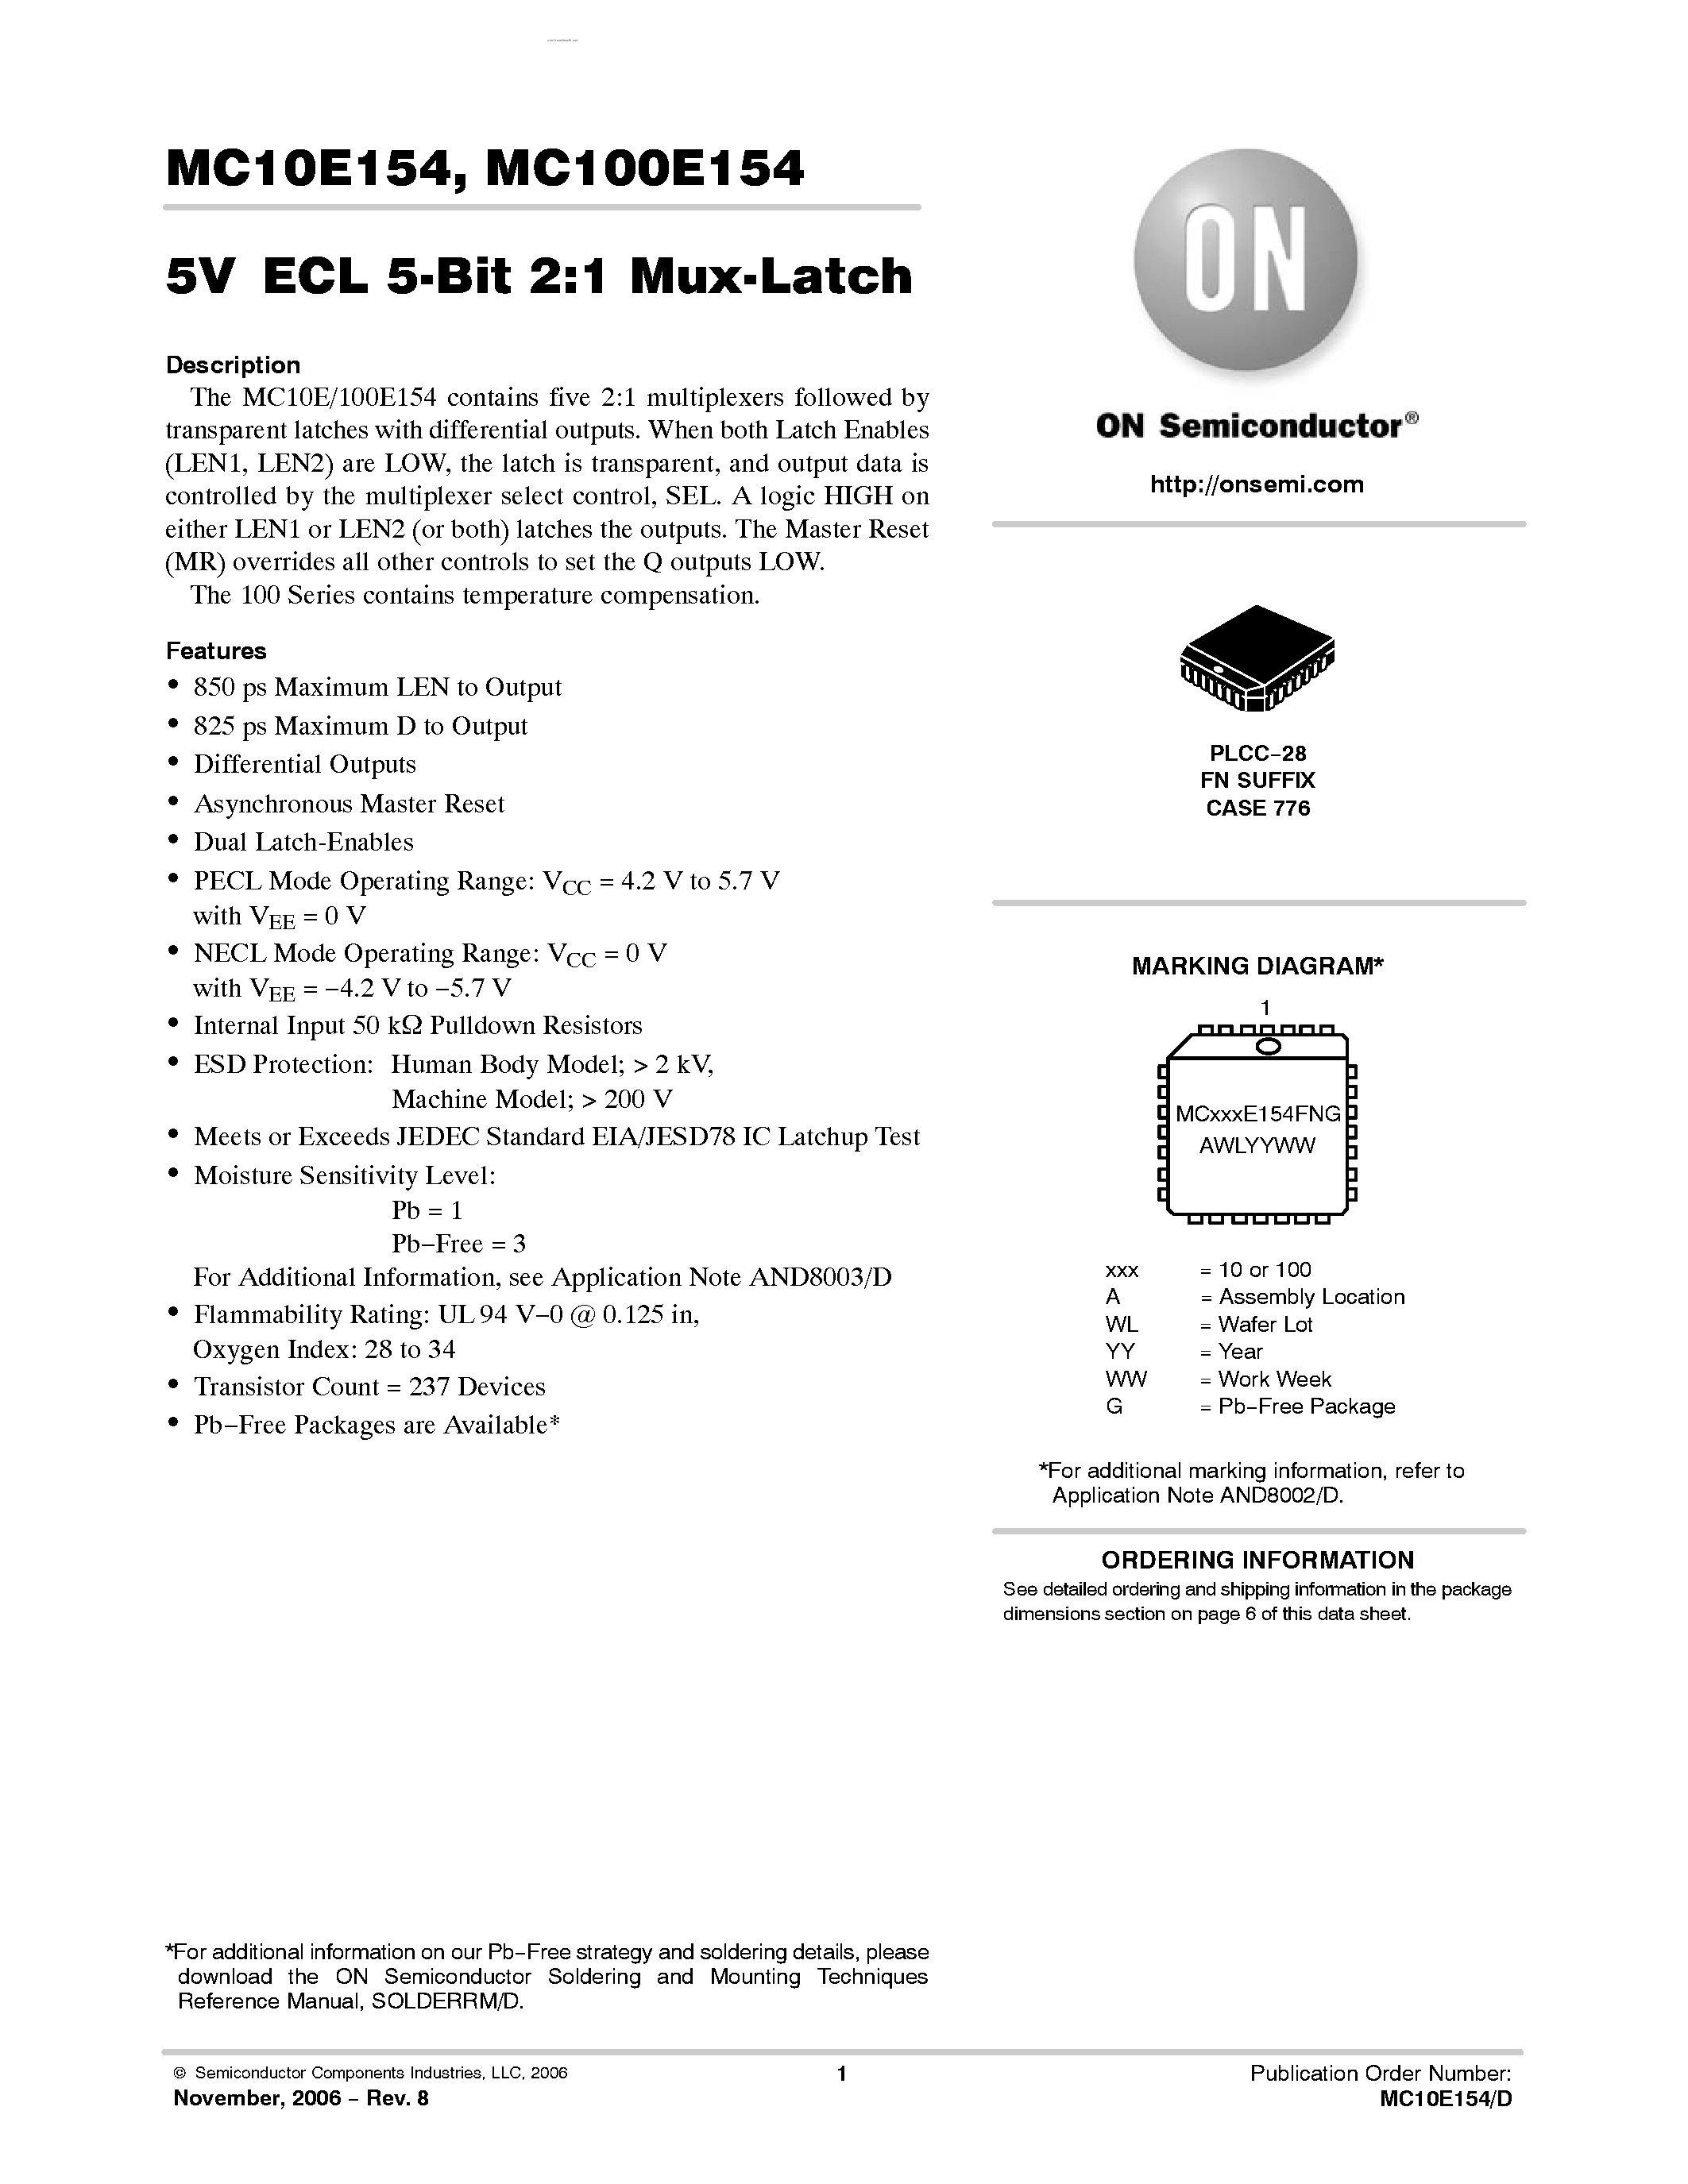 Datasheet MC100E154 - 5-BIT 2:1 MUX-LATCH page 1